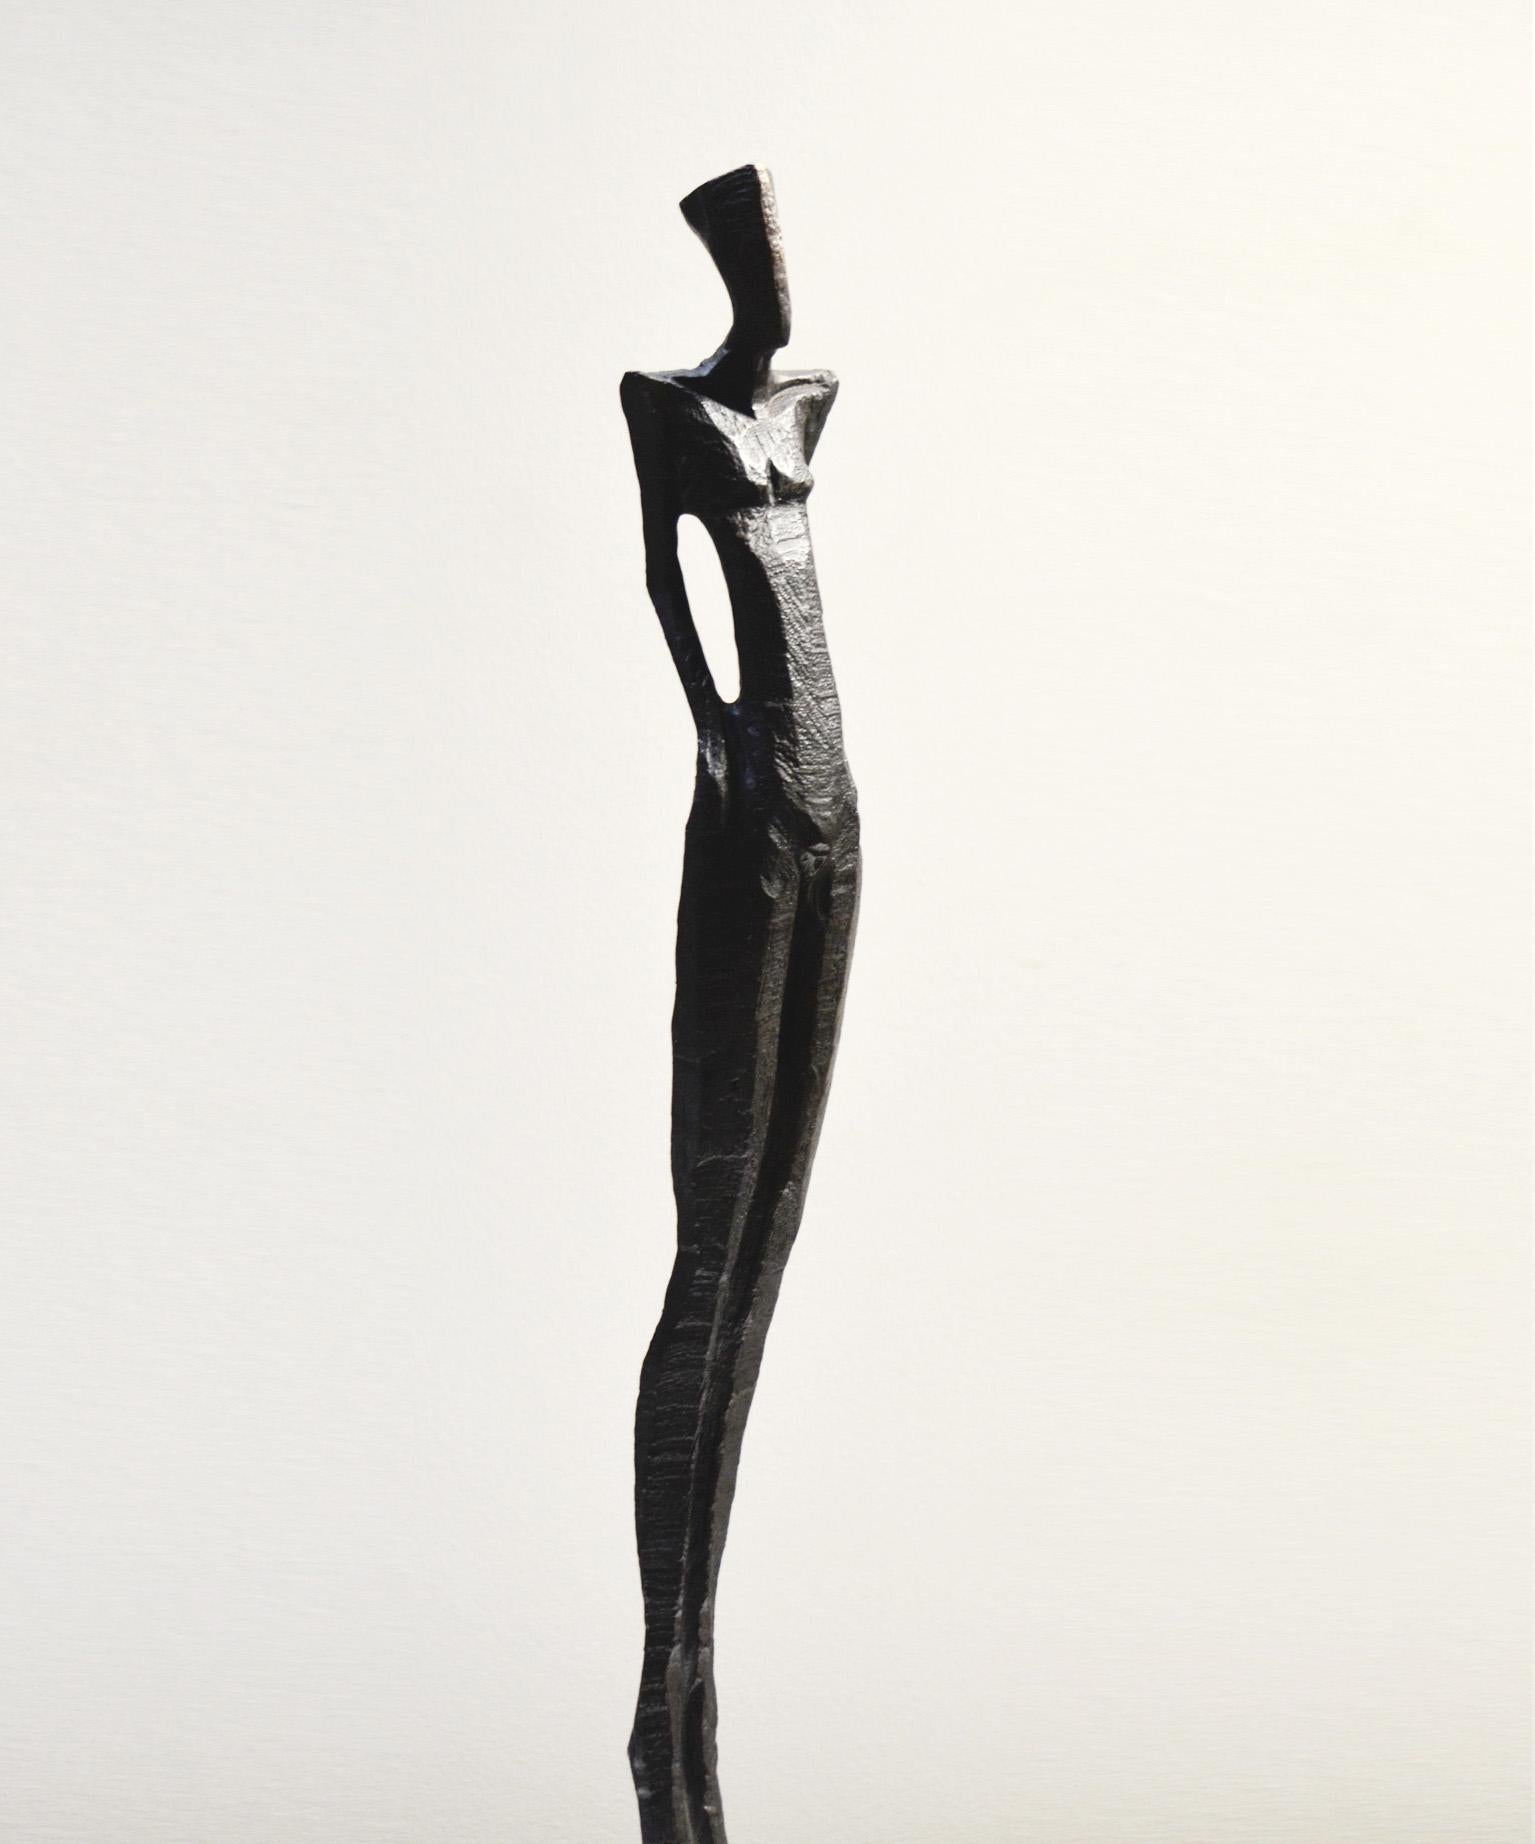 Antonio's III ist eine hohe, elegante Bronzeskulptur einer menschlichen Figur.  

Nando Kallweit ist ein deutscher Bildhauer, der in Bronze und Eiche arbeitet.  Kallweit schnitzt das Originalstück mit der Kettensäge aus einem Stück Eiche.  Mit dem